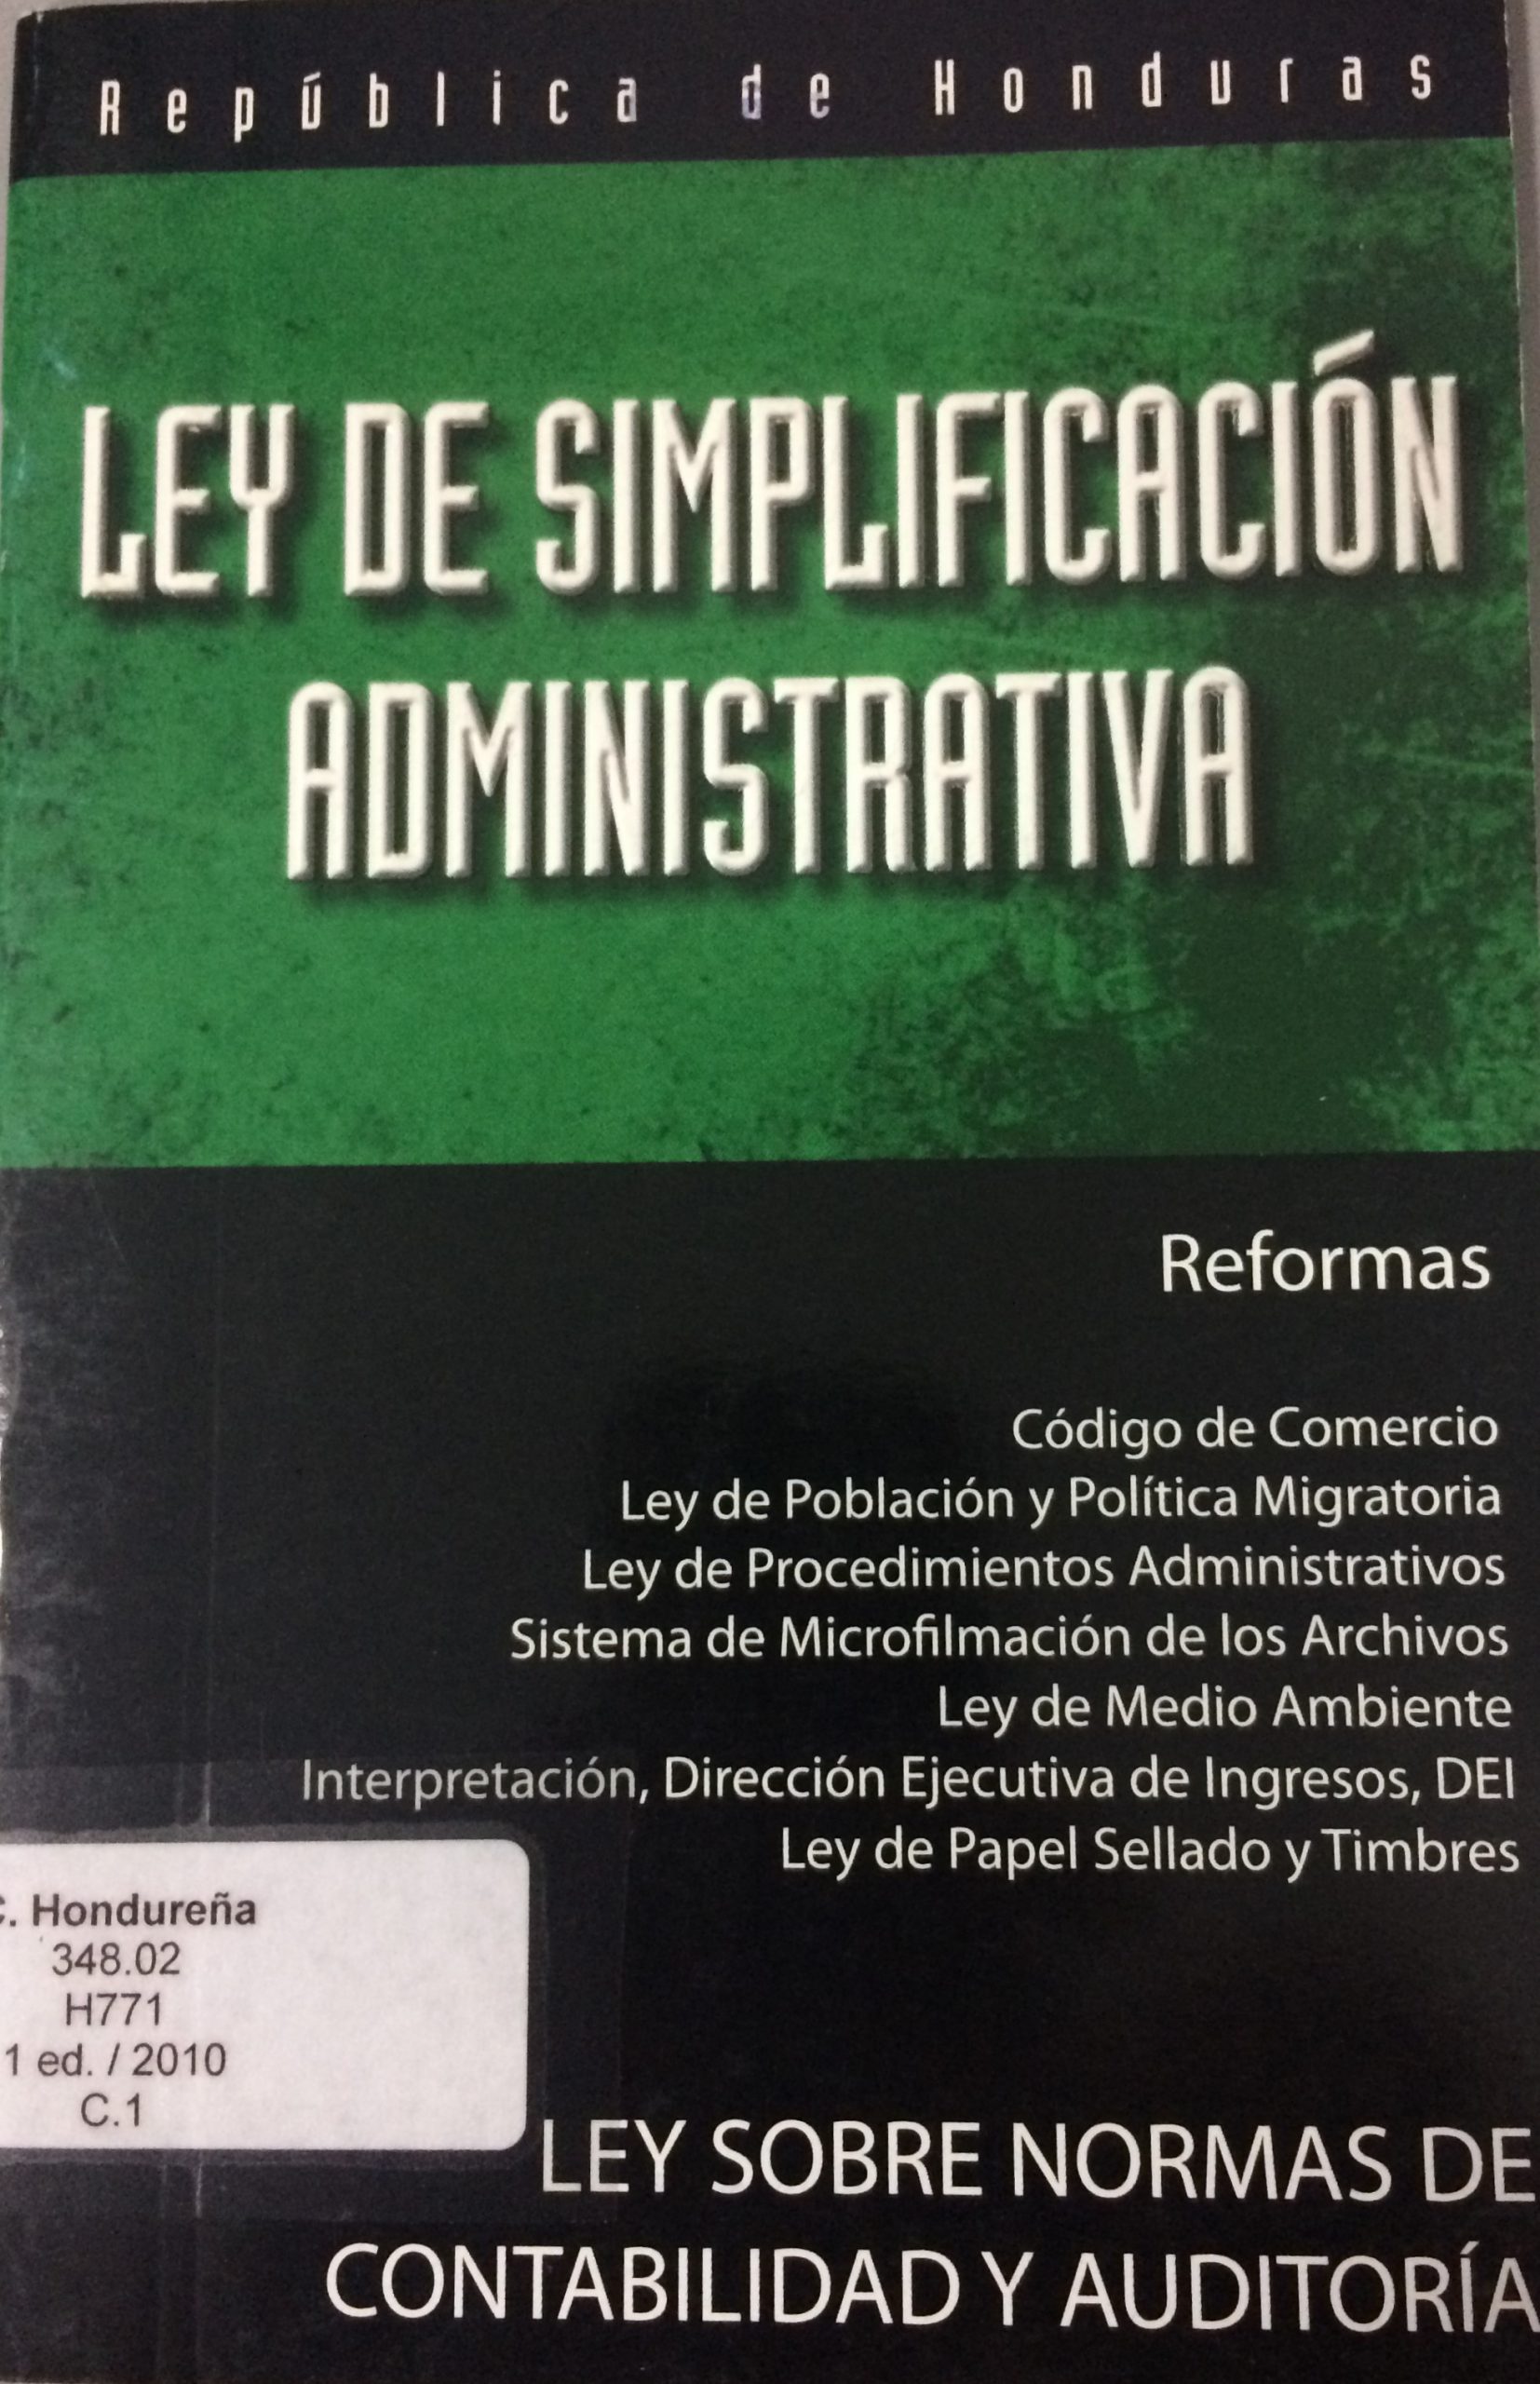 Oferta Especial Ley de Simplificación Administrativa